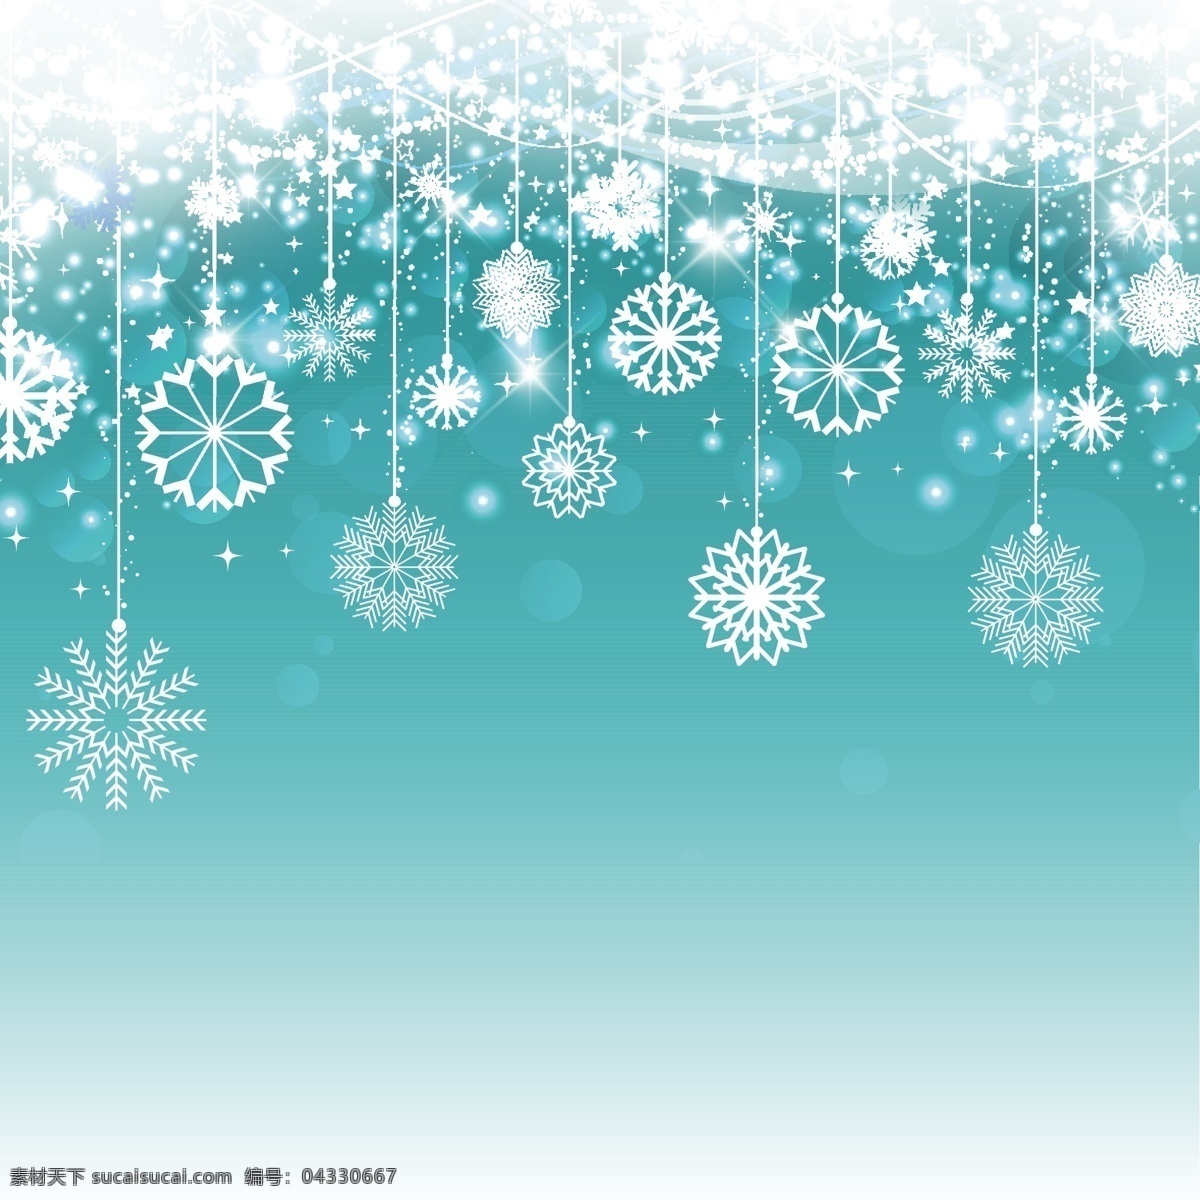 圣诞 雪花 蓝色 背景 圣诞节 抽象 几何 圣诞快乐 冬季 快乐 庆祝活动 假日 节假日